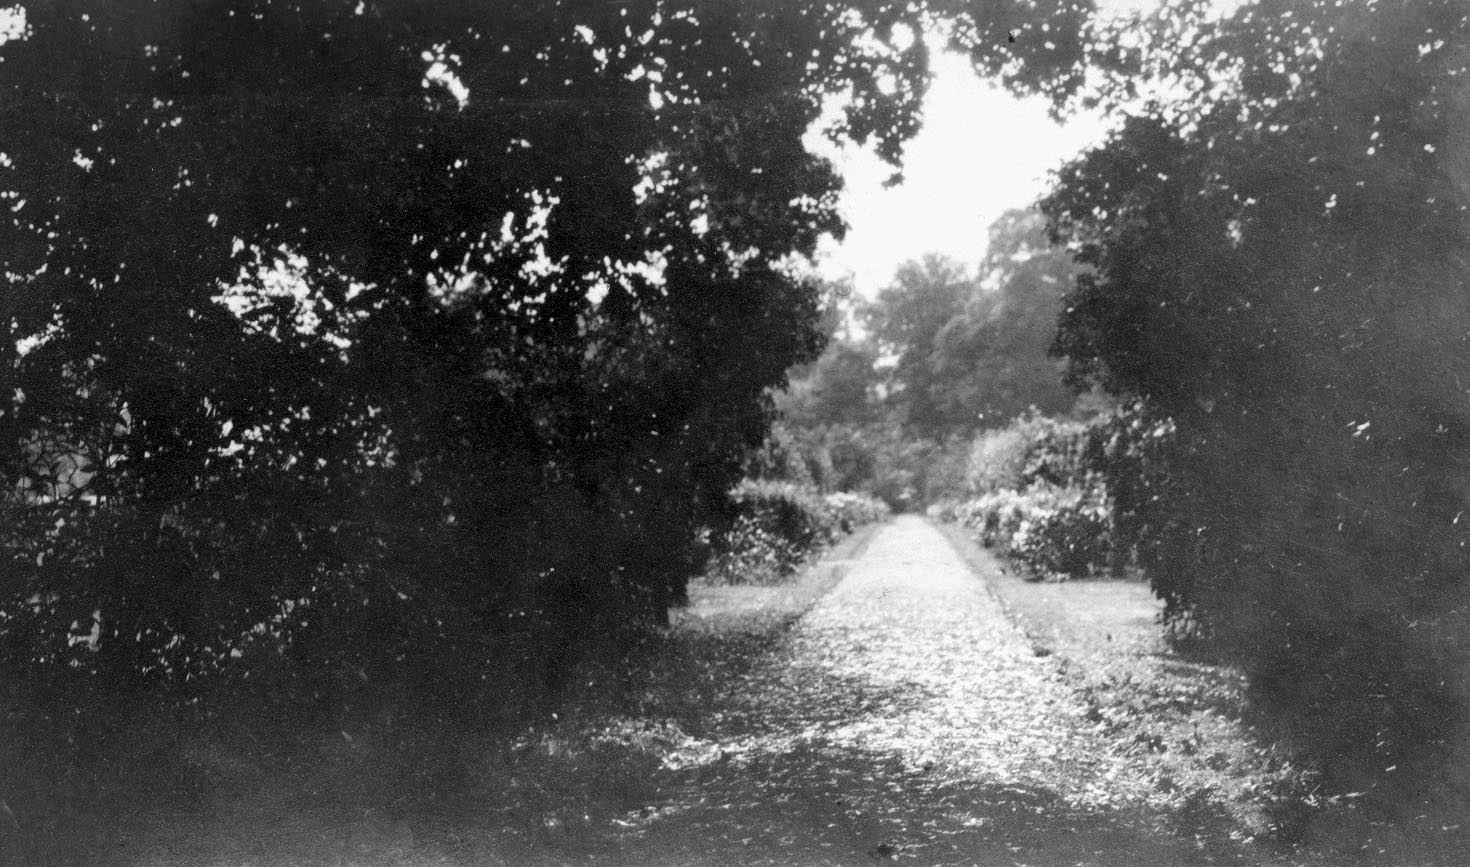 A path runs through a garden